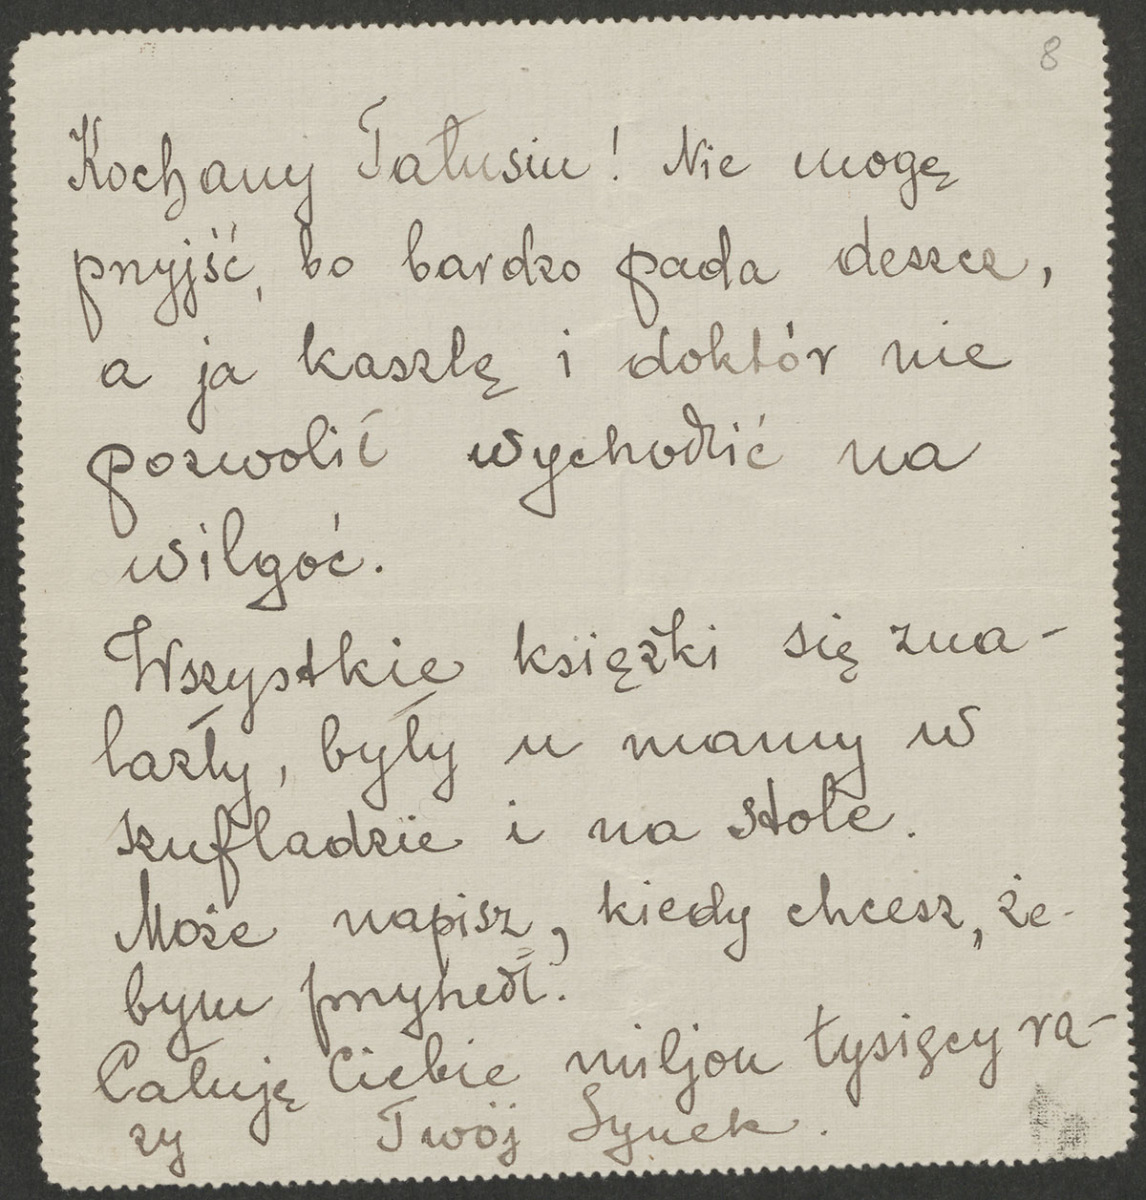 Tekst na kartce kratkowanego szarego papieru, starannym i okrągłym pismem, czarnym atramentem